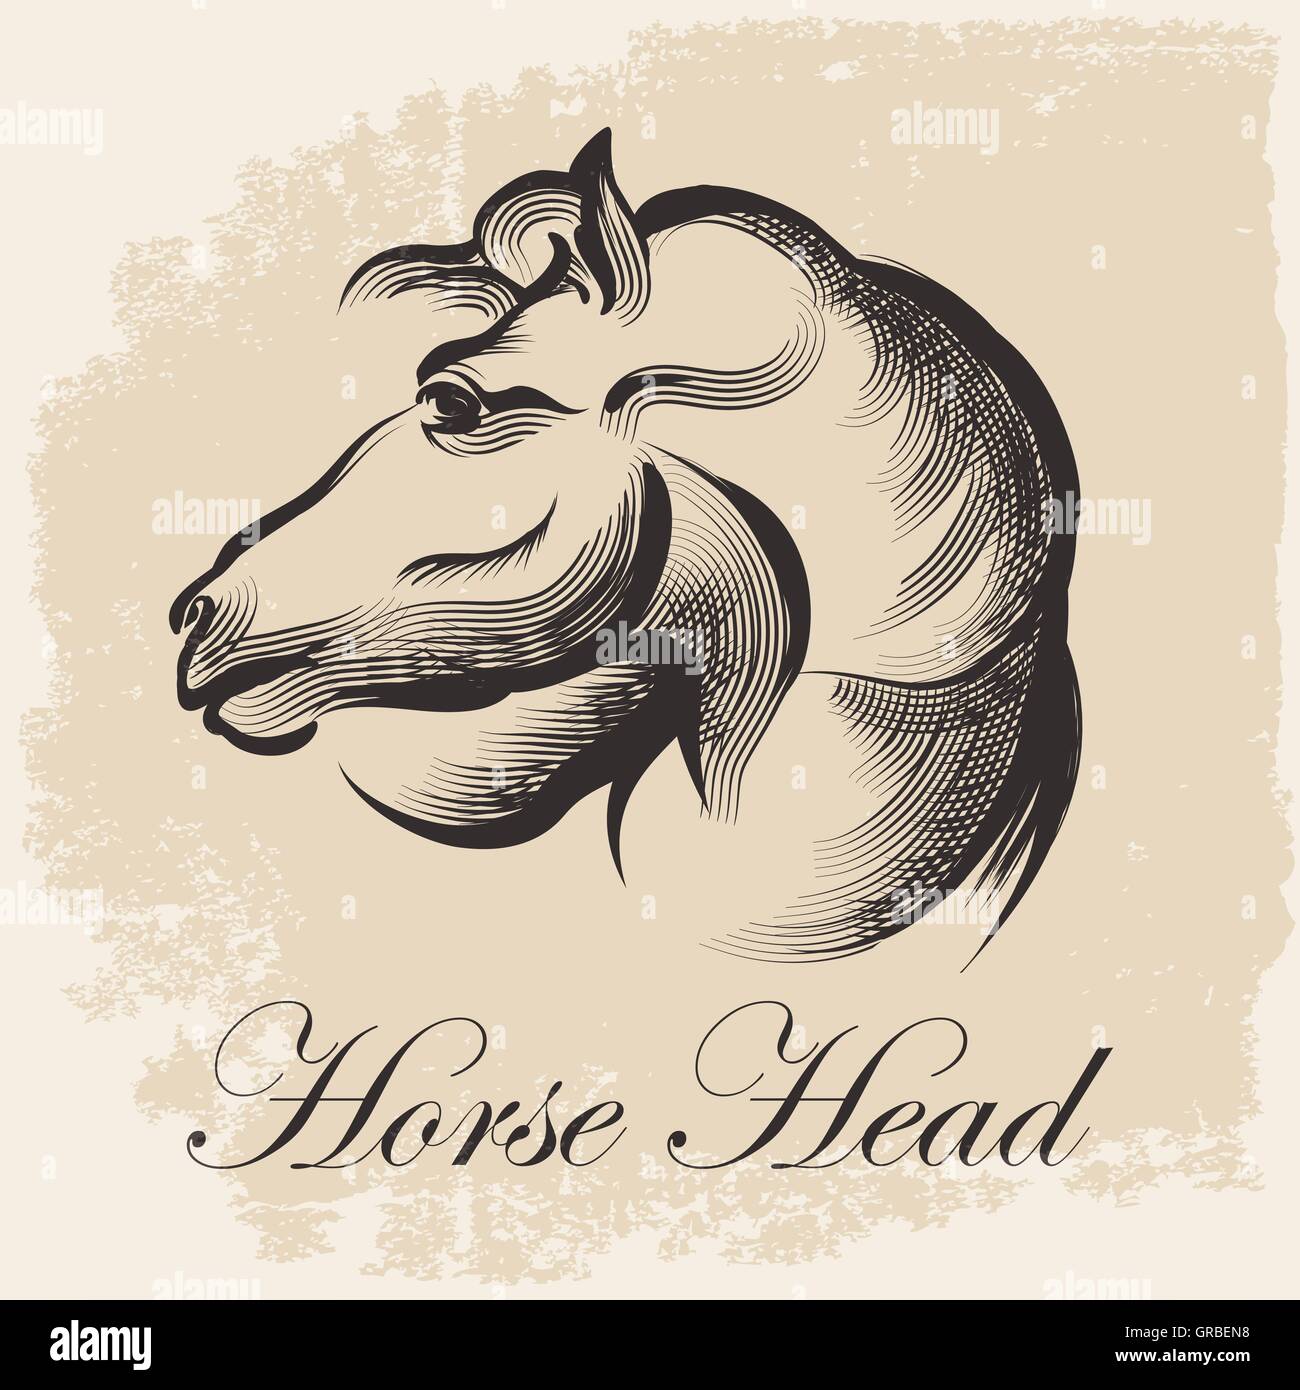 Schizzo della testa di cavallo disegno nel retro stile di inchiostro. Illustrazione Vettoriale. Illustrazione Vettoriale